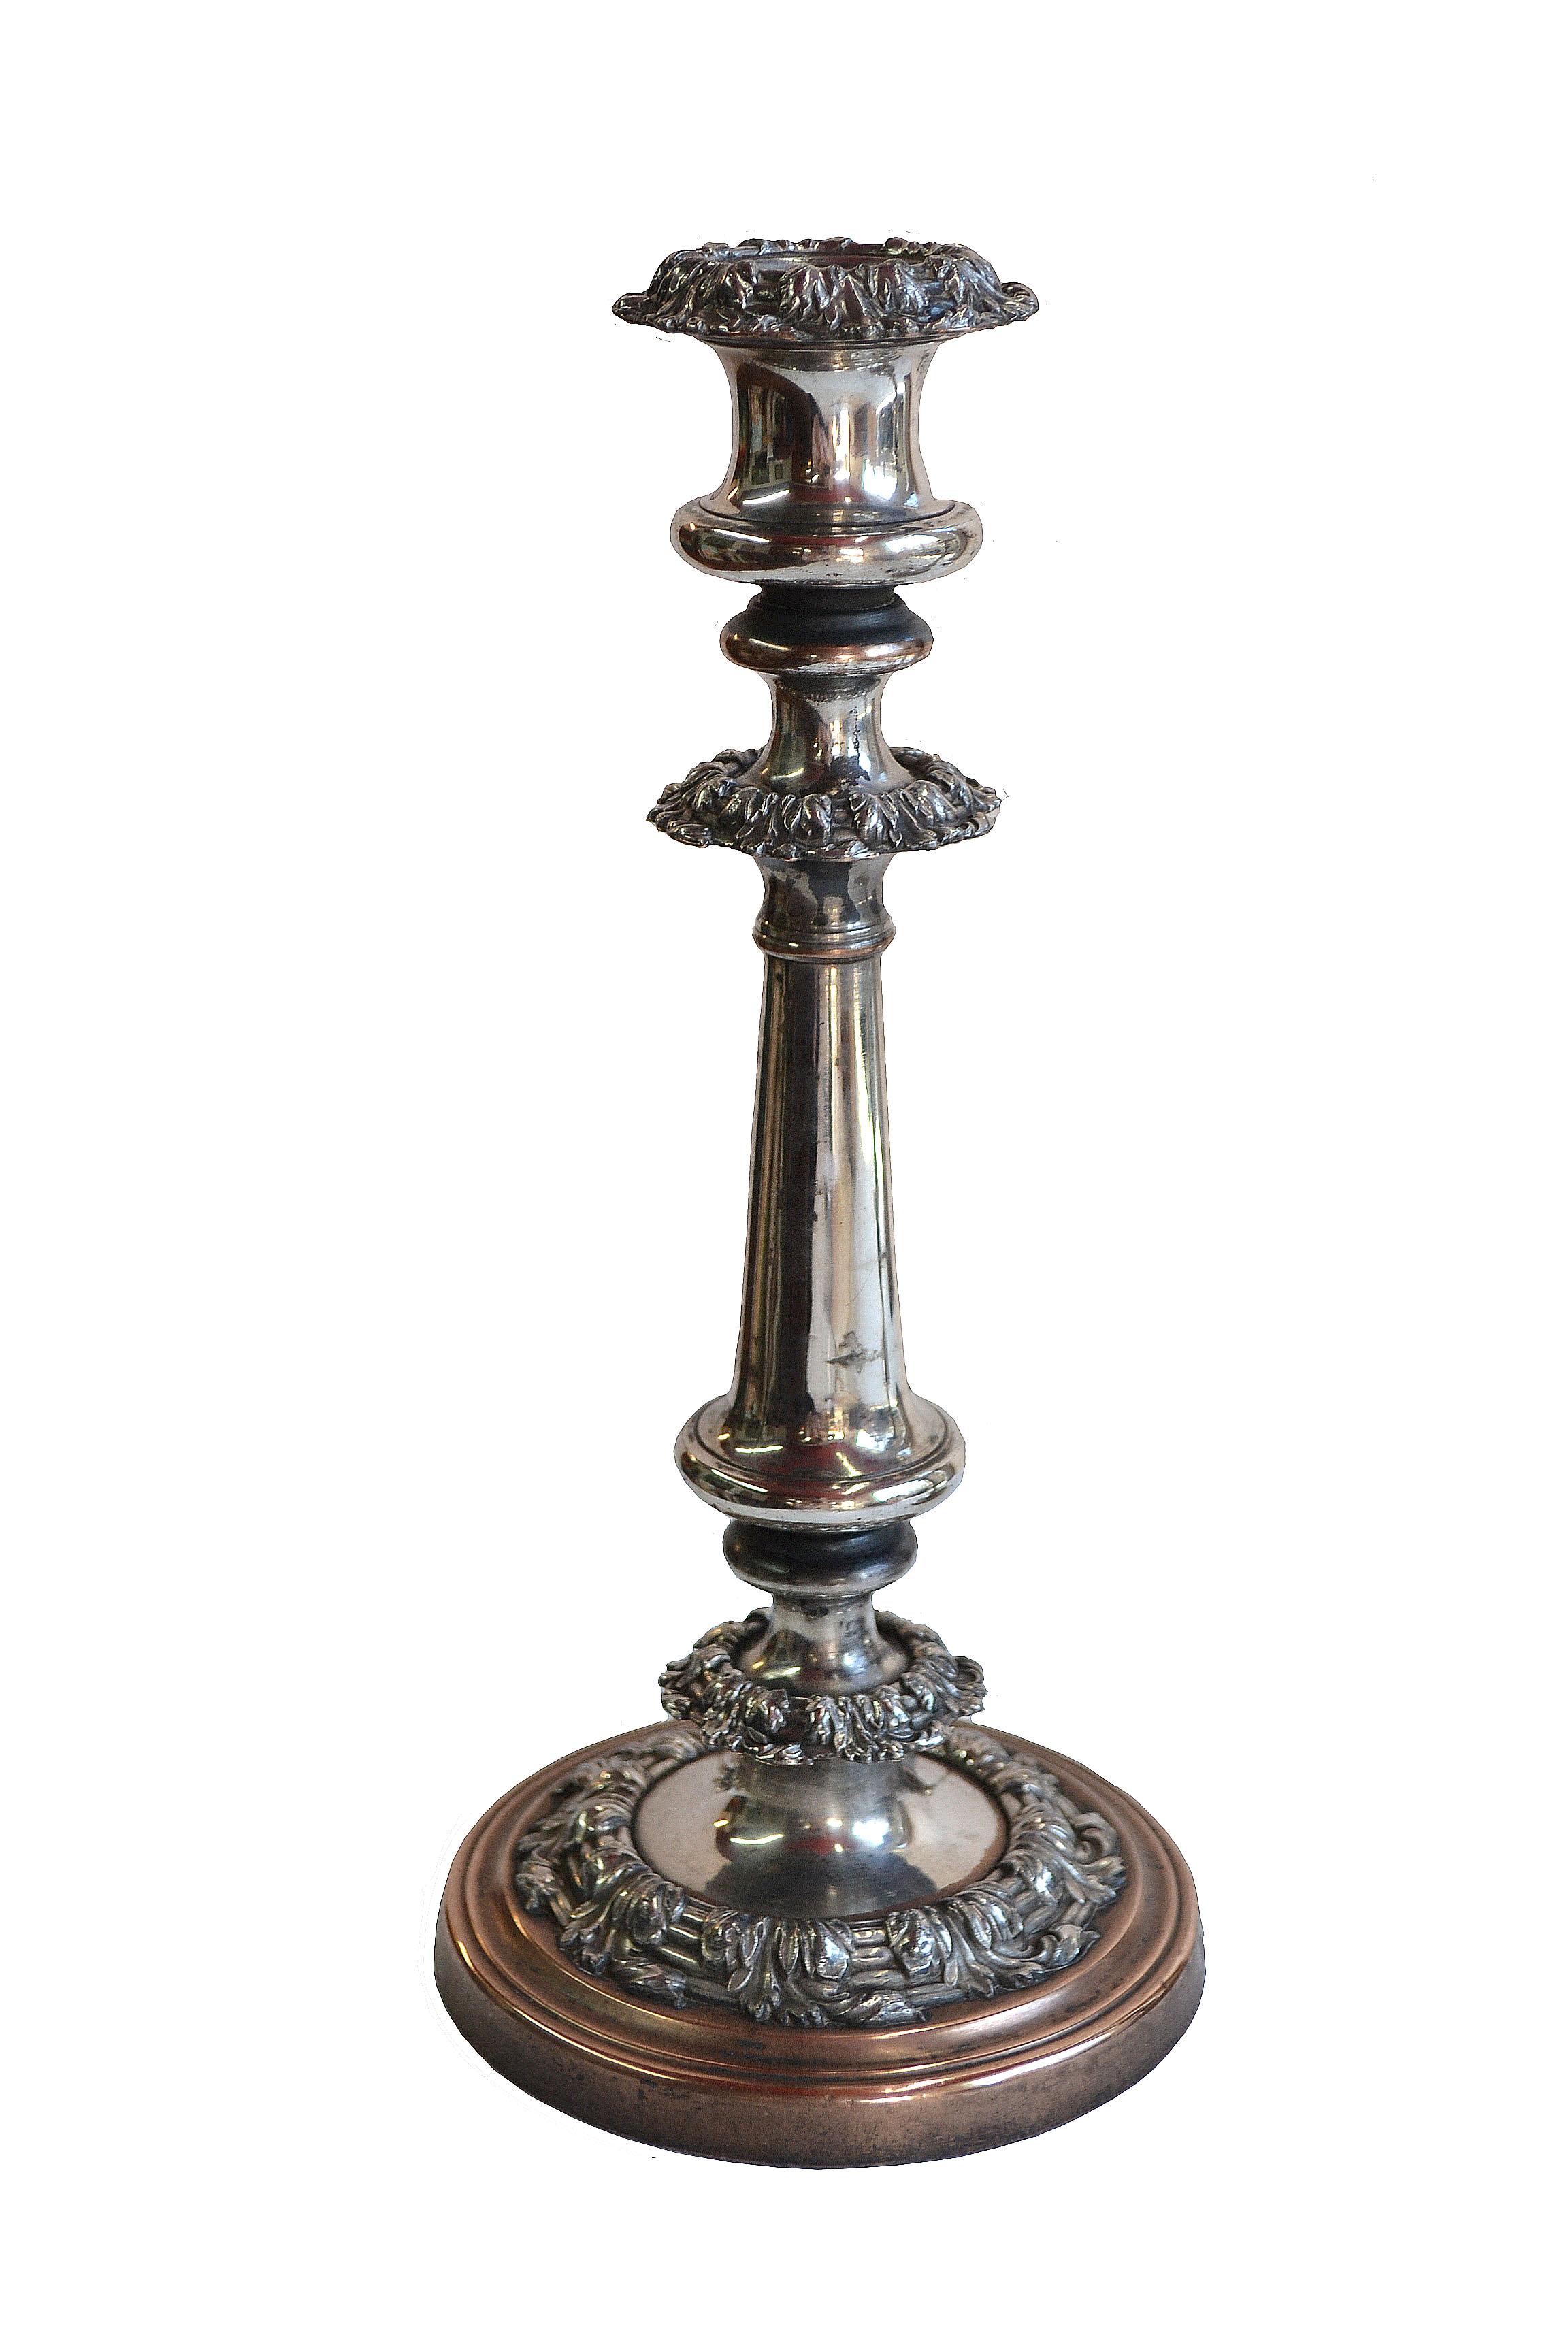 paire de chandeliers géorgiens du 19e siècle en plaques d'argent de Sheffield

Paire de chandeliers anglais, géorgiens, George IV Sheffield en métal argenté. Finition argentée vieillie. Perte d'argent à la base. Perte mineure dans les autres zones.